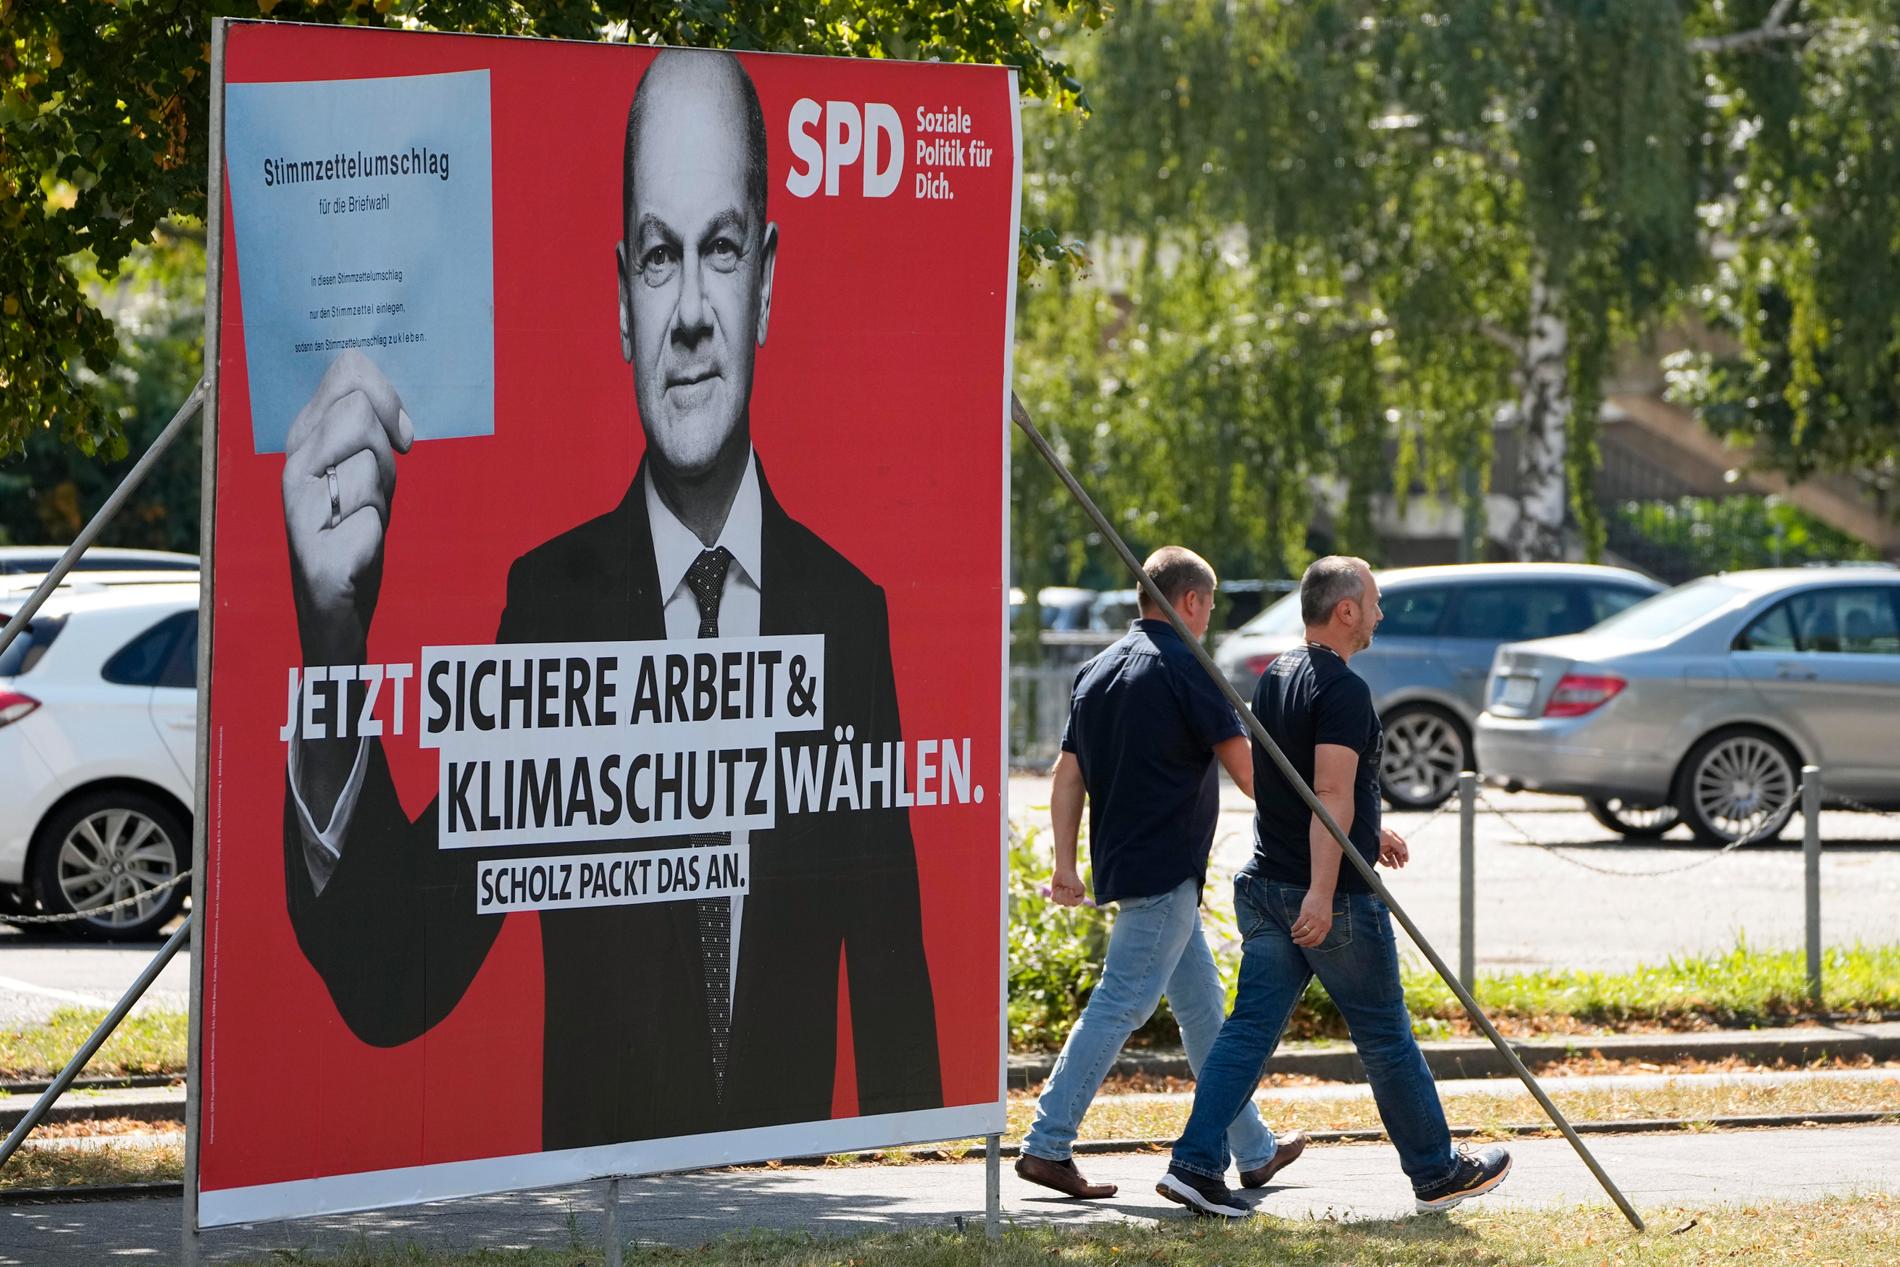 SPD:s kanslerkandidat Olaf Scholz har plötsligt seglat upp en favorit att ersätta Angela Merkel.